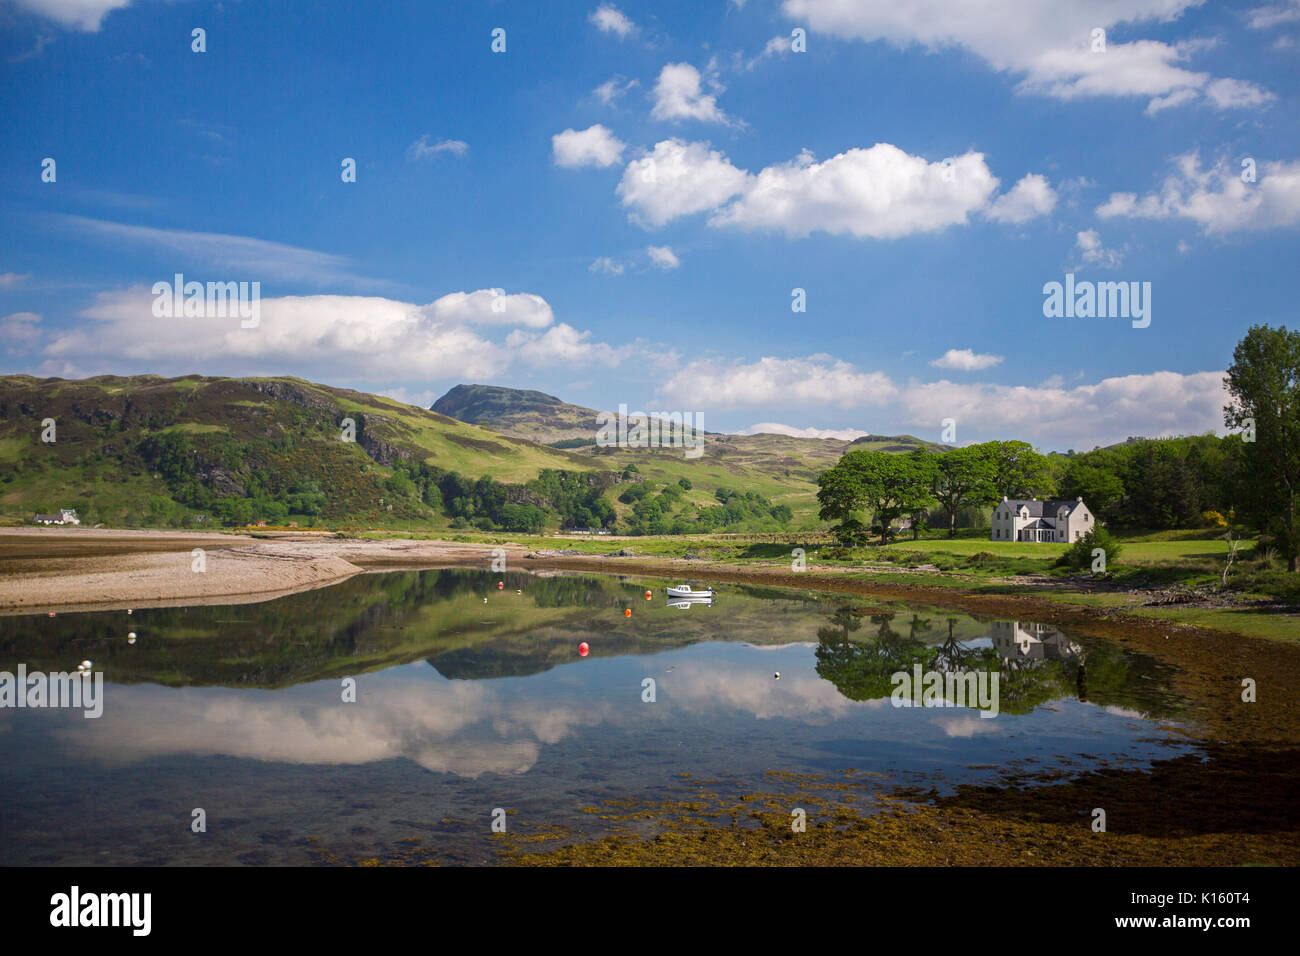 Atemberaubende Landschaft mit Bergen, blauer Himmel und weiße Haus in ruhigen Gewässern des Loch wider, & Sandstrand mit Bäumen in der Nähe von Glenelg Schottland gesäumt Stockfoto